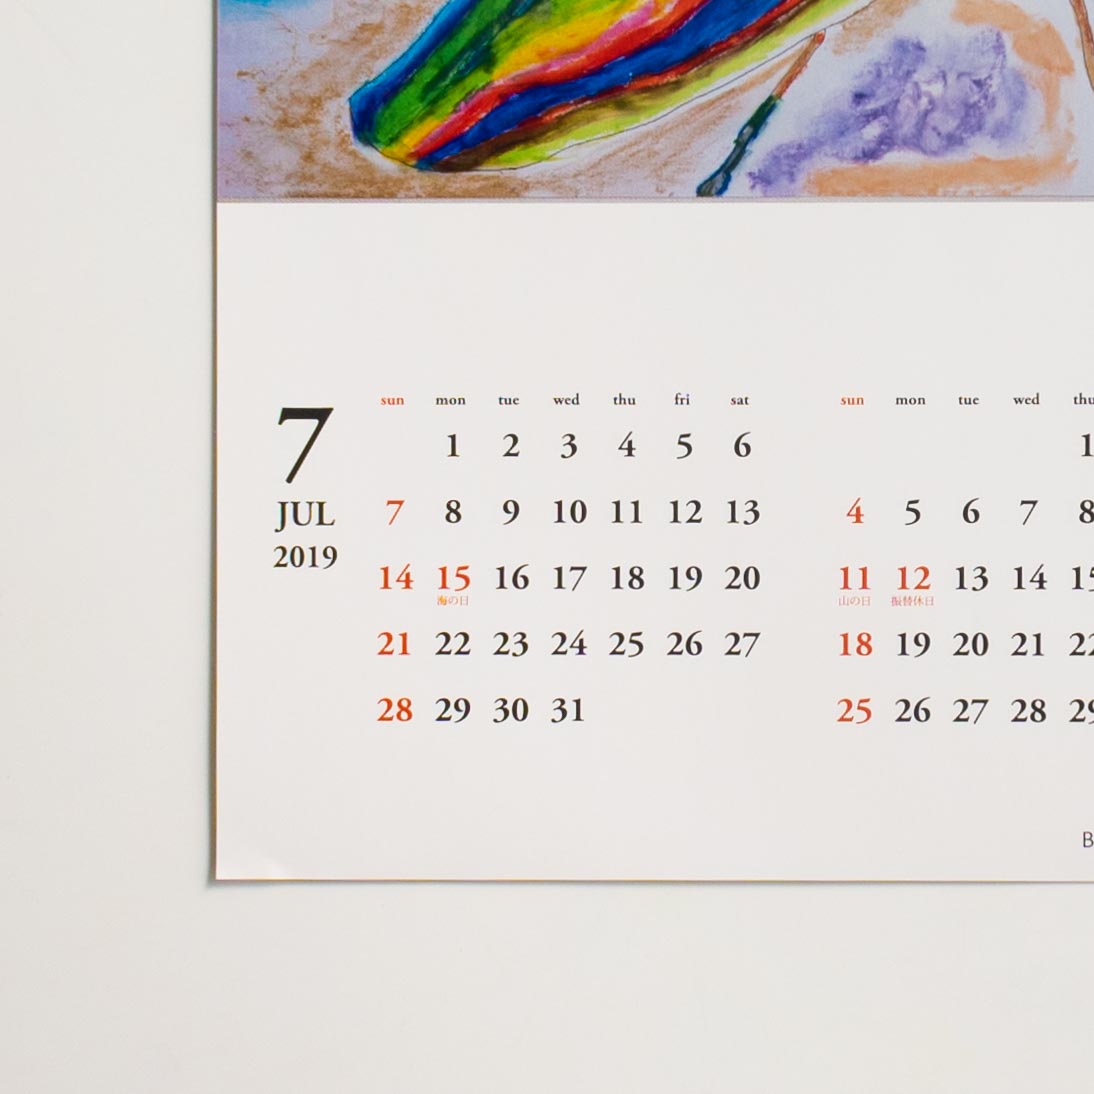 「井上  潤一 様」製作のオリジナルカレンダー ギャラリー写真2